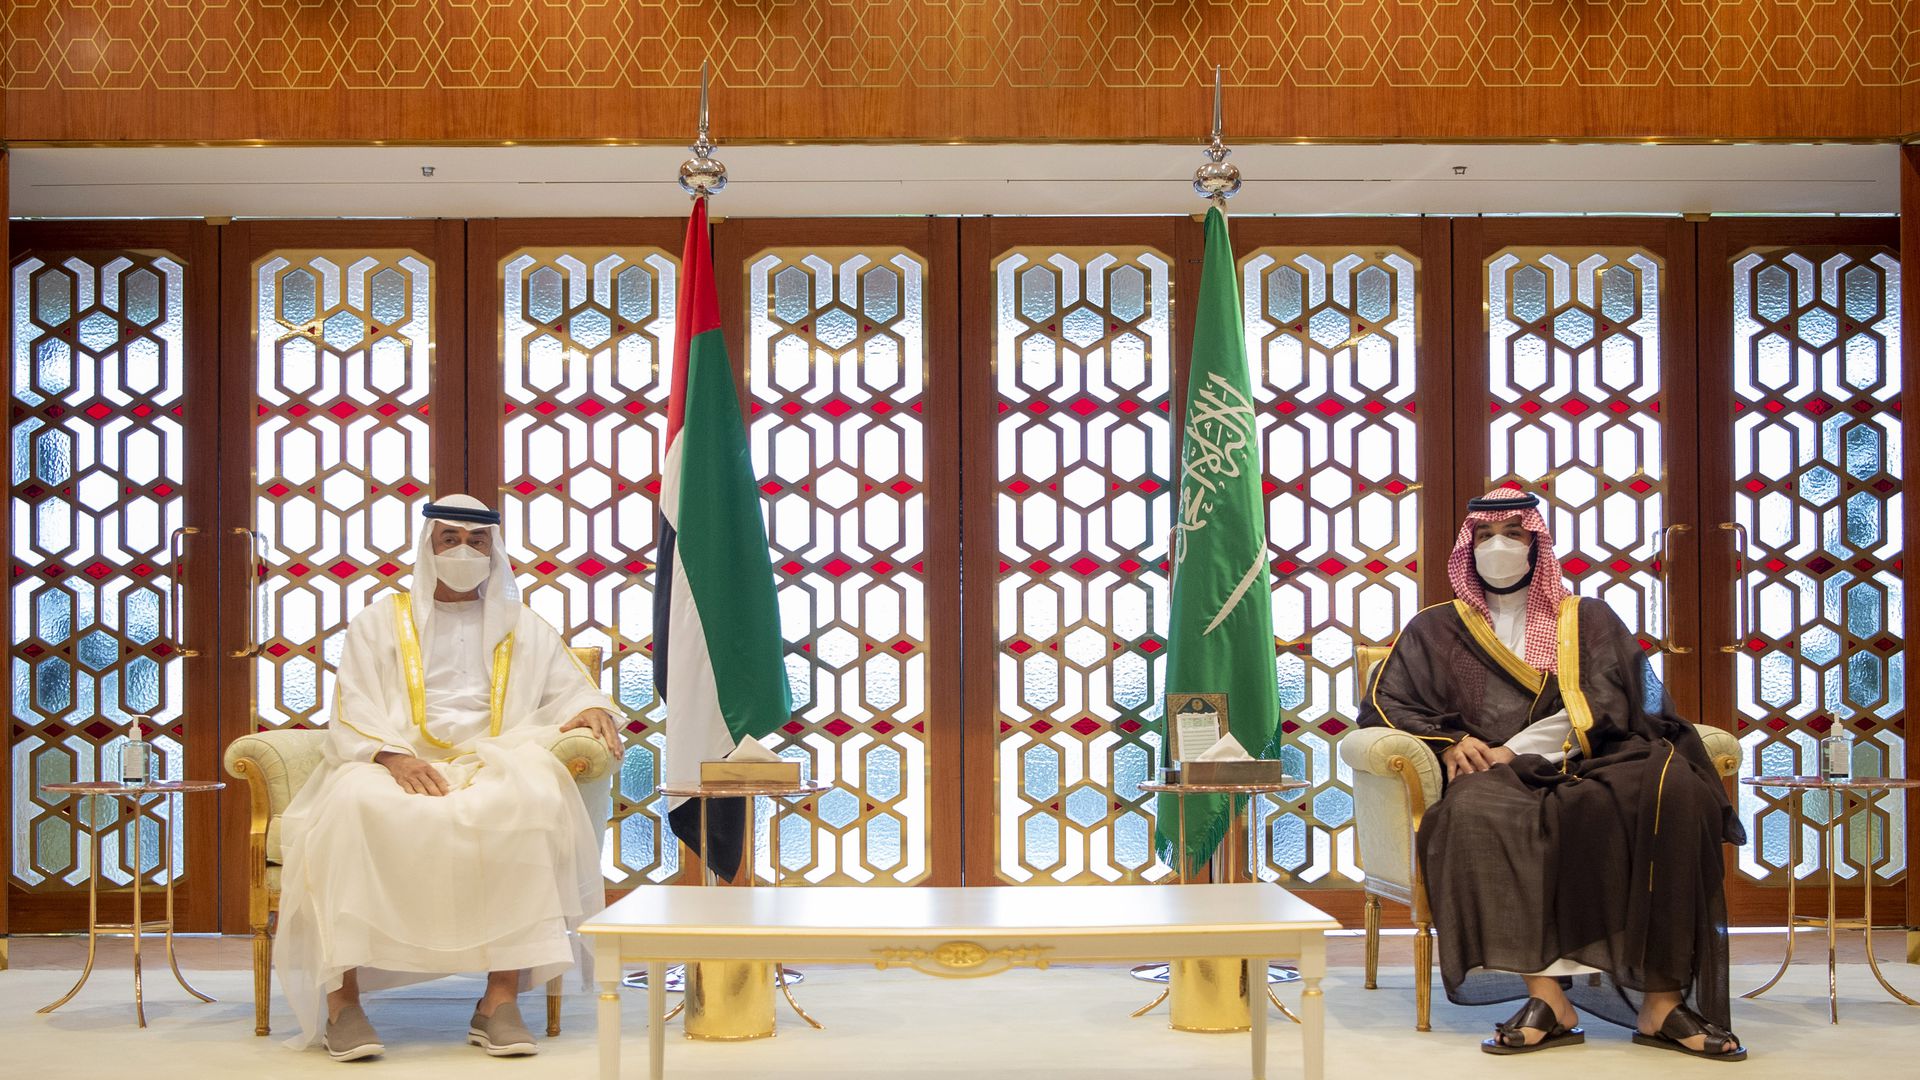 السعودية ضغطت على الإمارات العربية المتحدة للتراجع عن صفقة كبيرة الكهرباء مقابل الماء مع إسرائيل والأردن watanserb.com